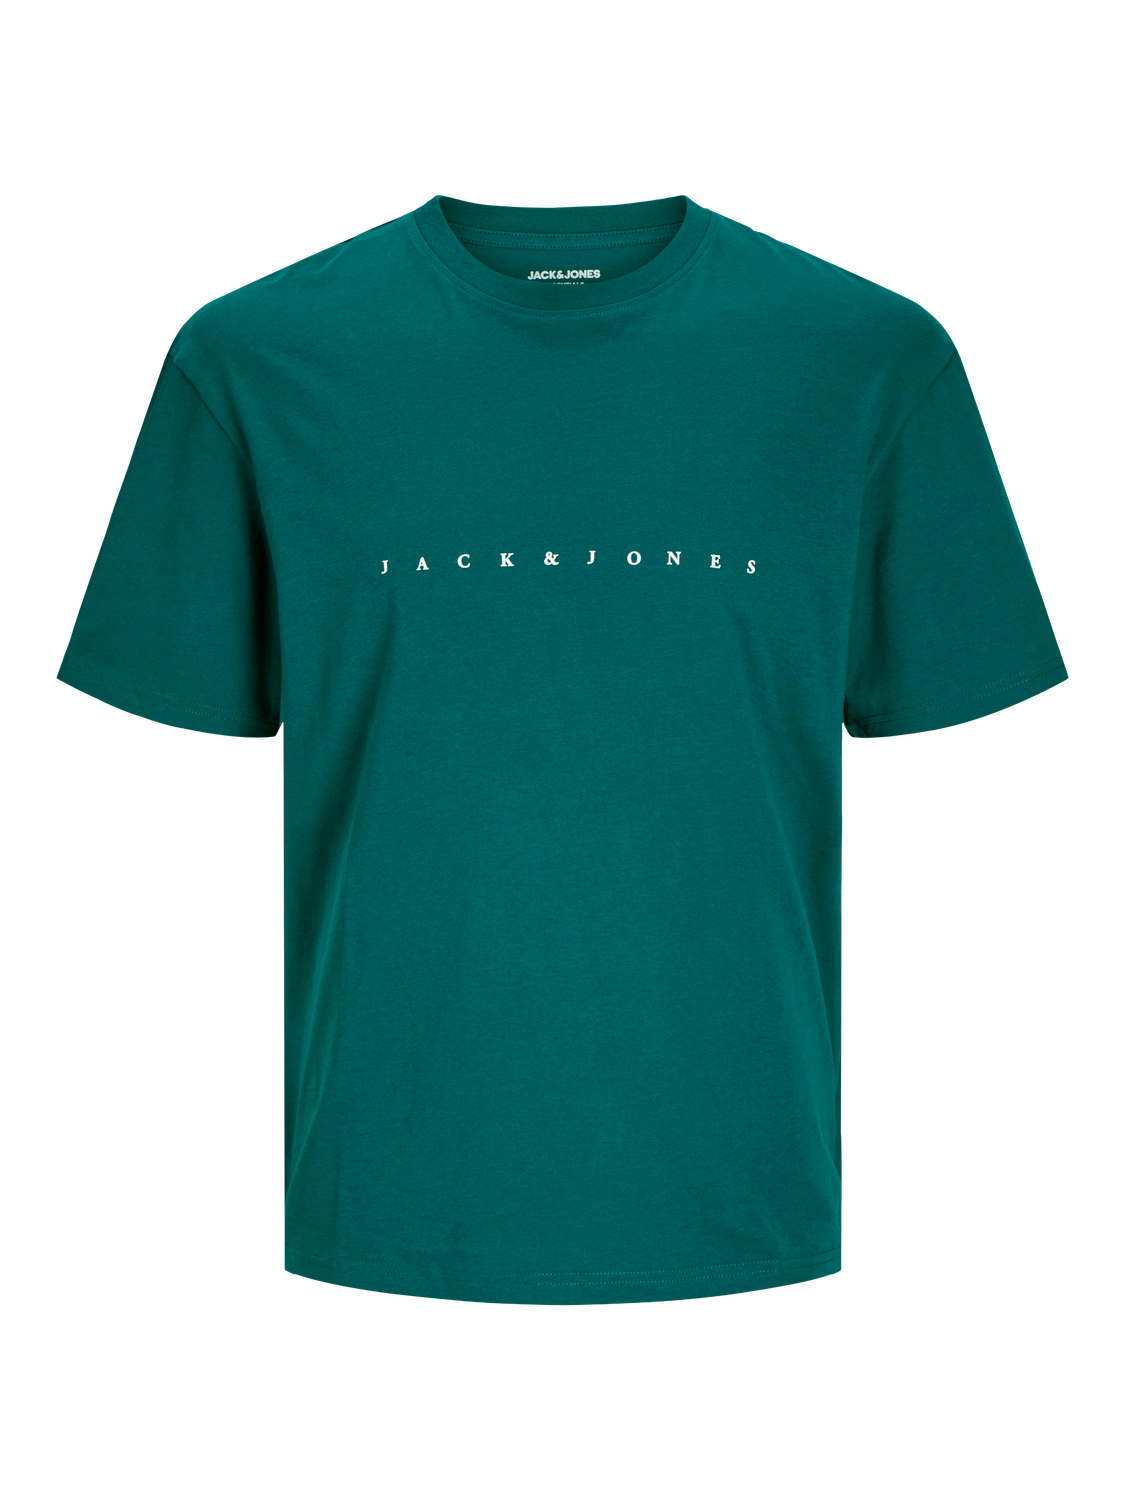 Jack & Jones T-shirt Logo Pour les garçons -Deep Teal - 12237435